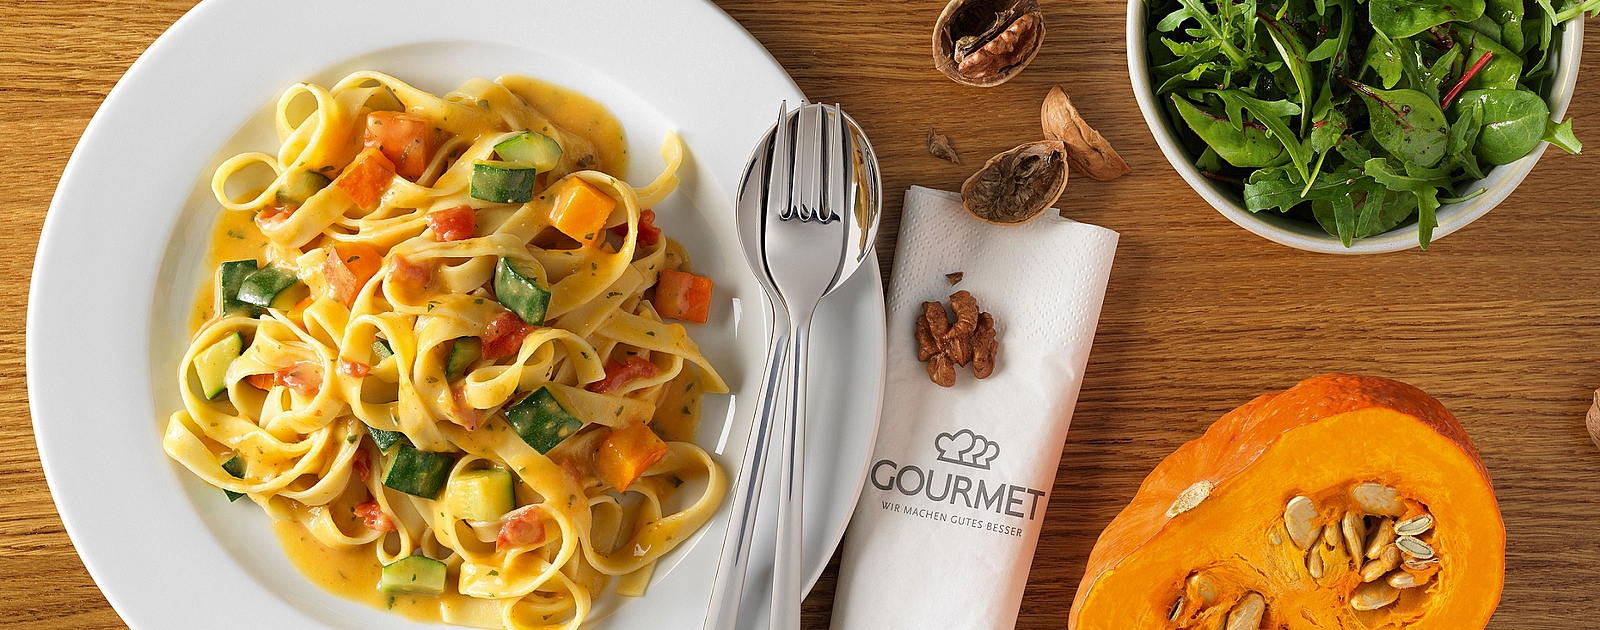 Durch die Wahl einer klimafreundlichen Speise aus den Kürbis-Wochen von GOURMET Business À la Carte – wie der Tagliatelle mit Kürbis-Zucchinisauce – konnten Gäste zum Umweltschutz beitragen. 